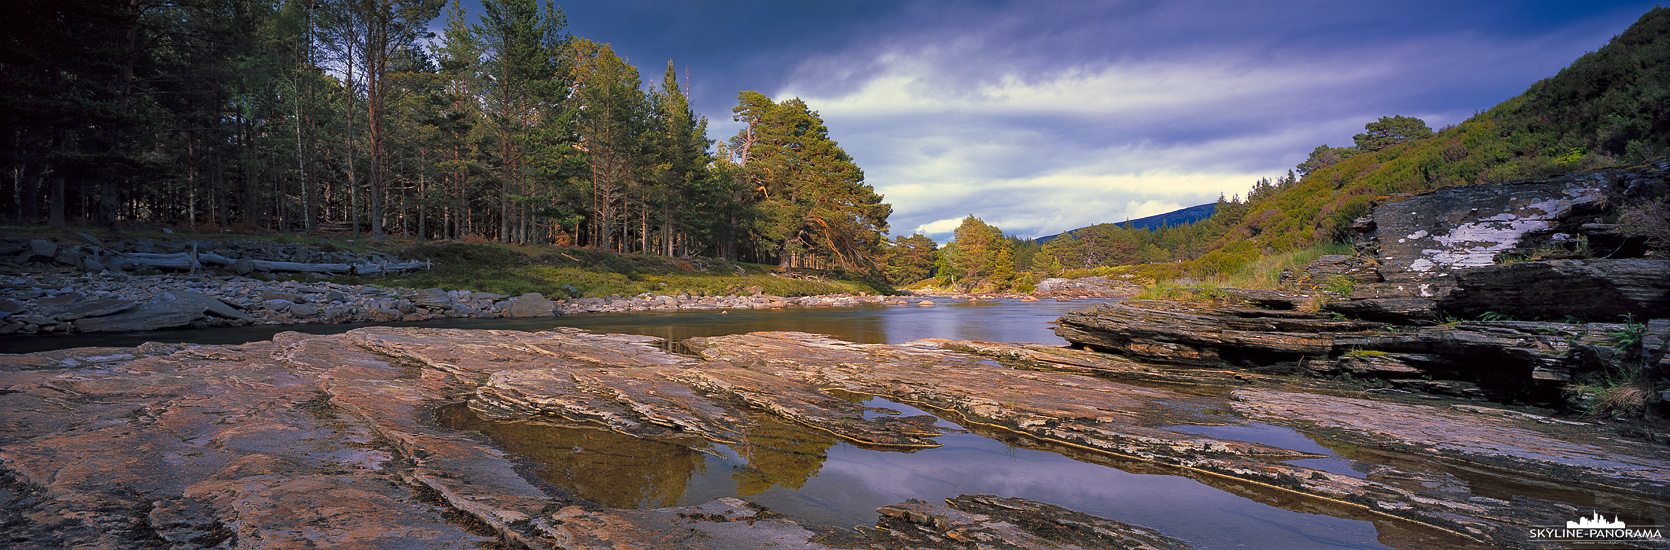 Unterwegs in den Highlands von Schottland - In der Nähe des Ortes Braemar, kurz vor dem Wasserfall Linn of Dee, fließt der River Dee durch die sehr reizvolle schottische Landschaft von Aberdeenshire. Hier ist der idyllische Verlauf durch das Dee Valley als Panorama auf Film im Format 6x17 fotografiert.